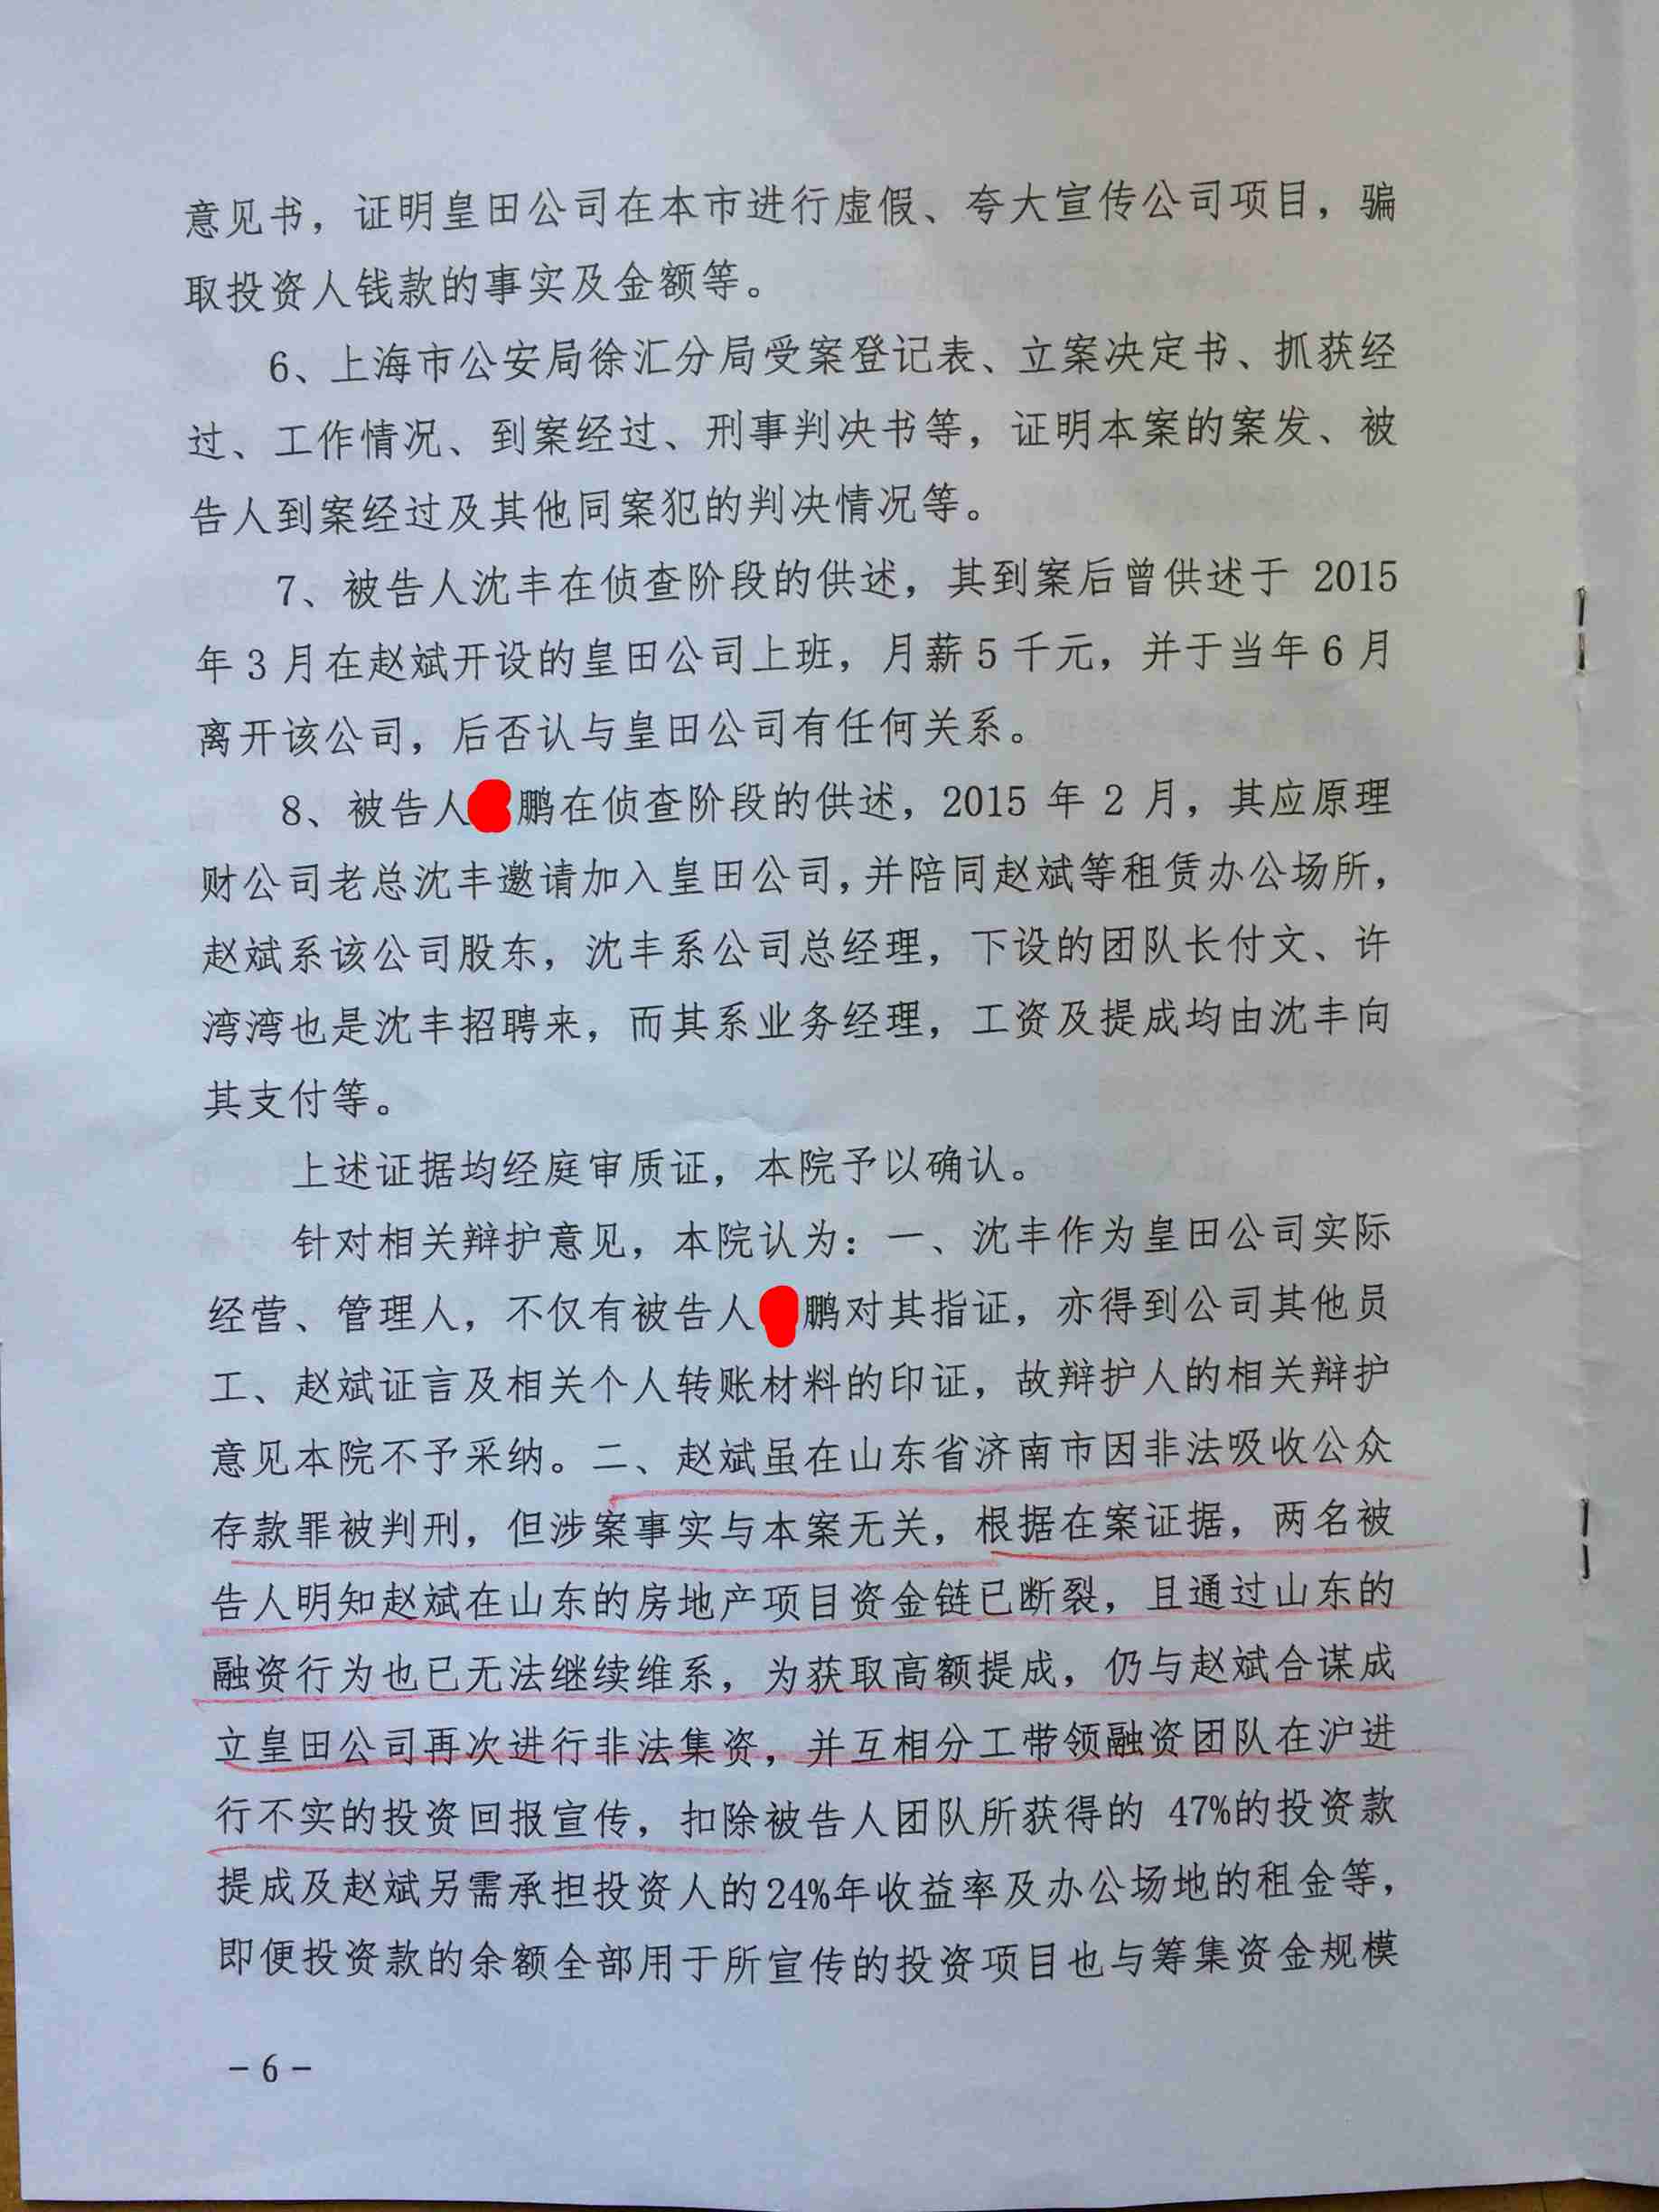 尹律师代理周鹏集资诈骗 非法吸收公众存款案 700万 从轻量刑